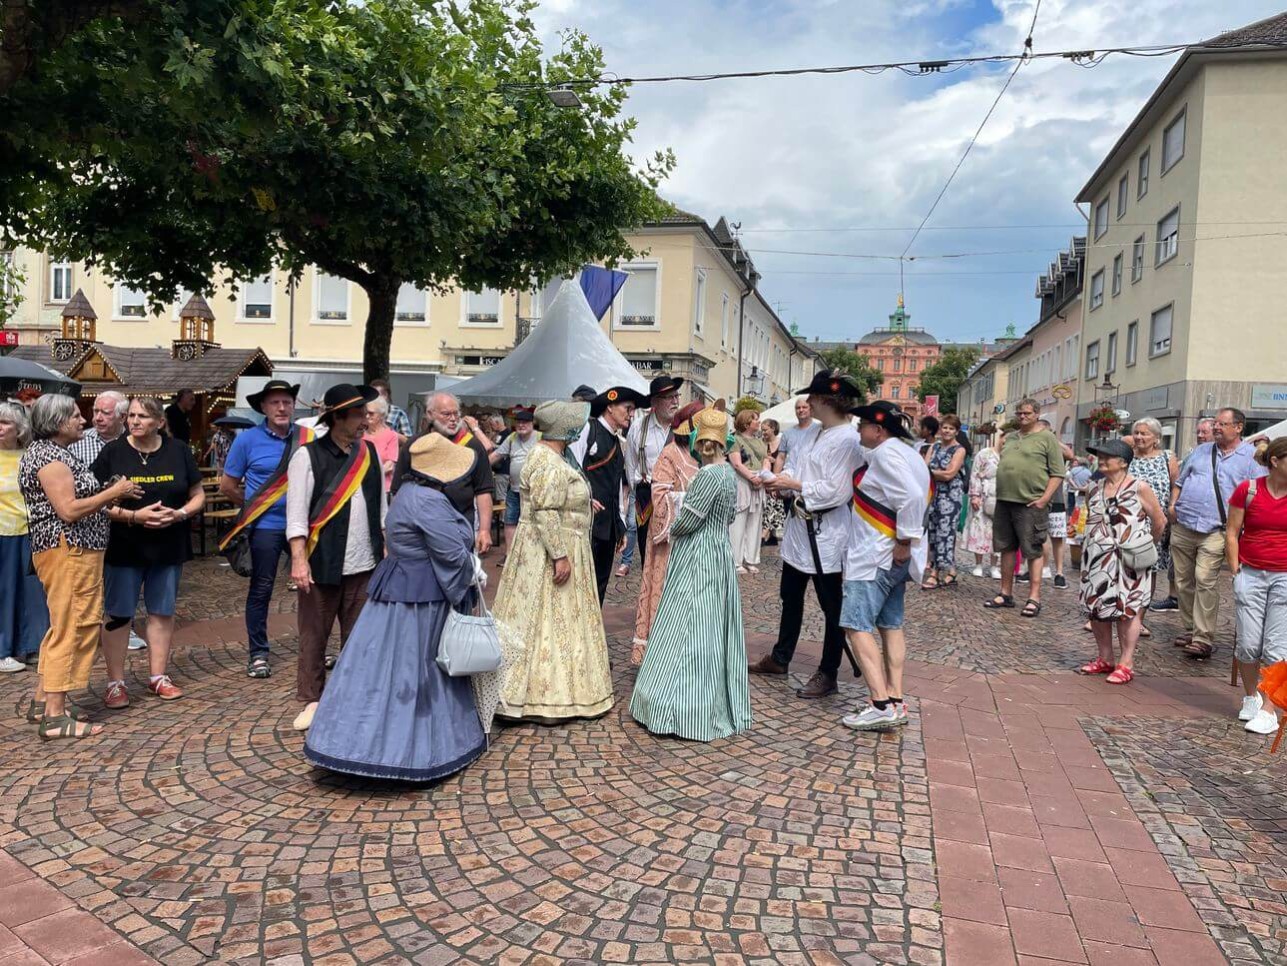 Menschen in historischen Kostümen auf dem Marktplatz